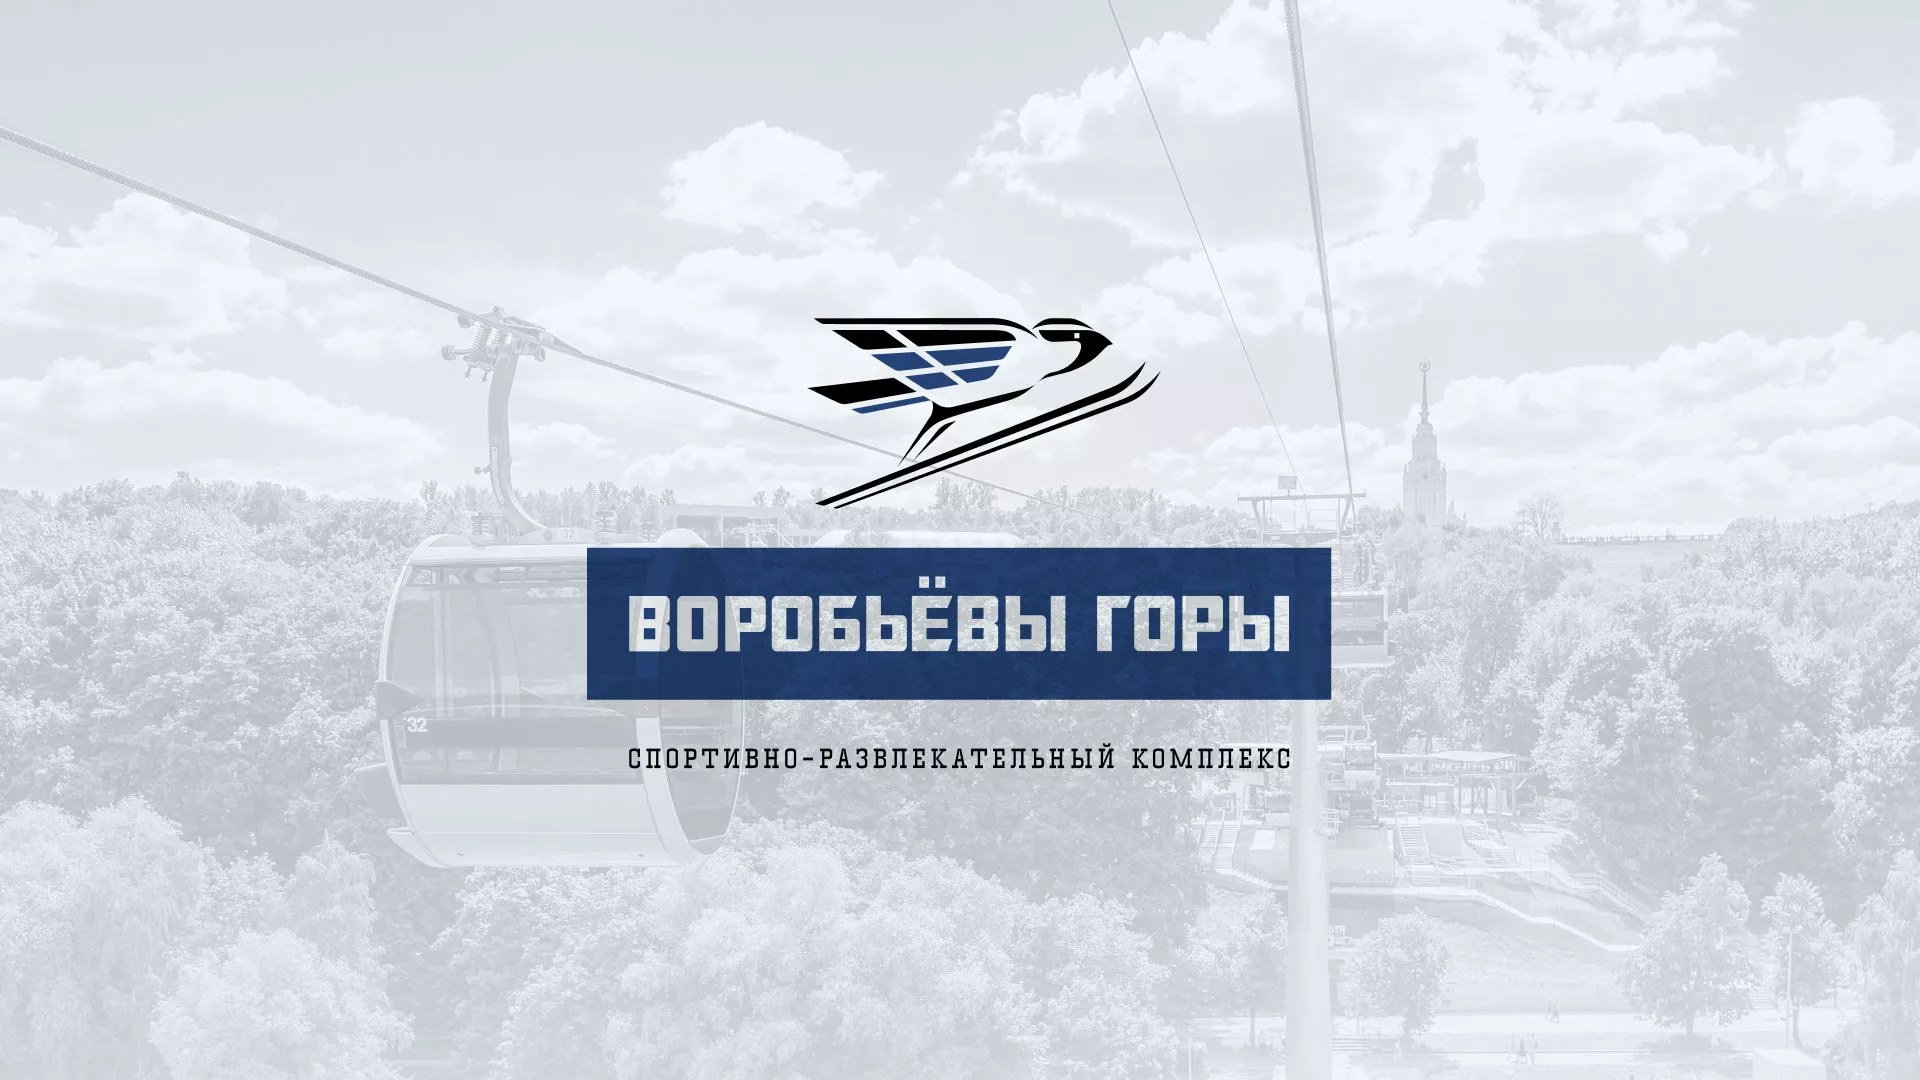 Разработка сайта в Чайковском для спортивно-развлекательного комплекса «Воробьёвы горы»